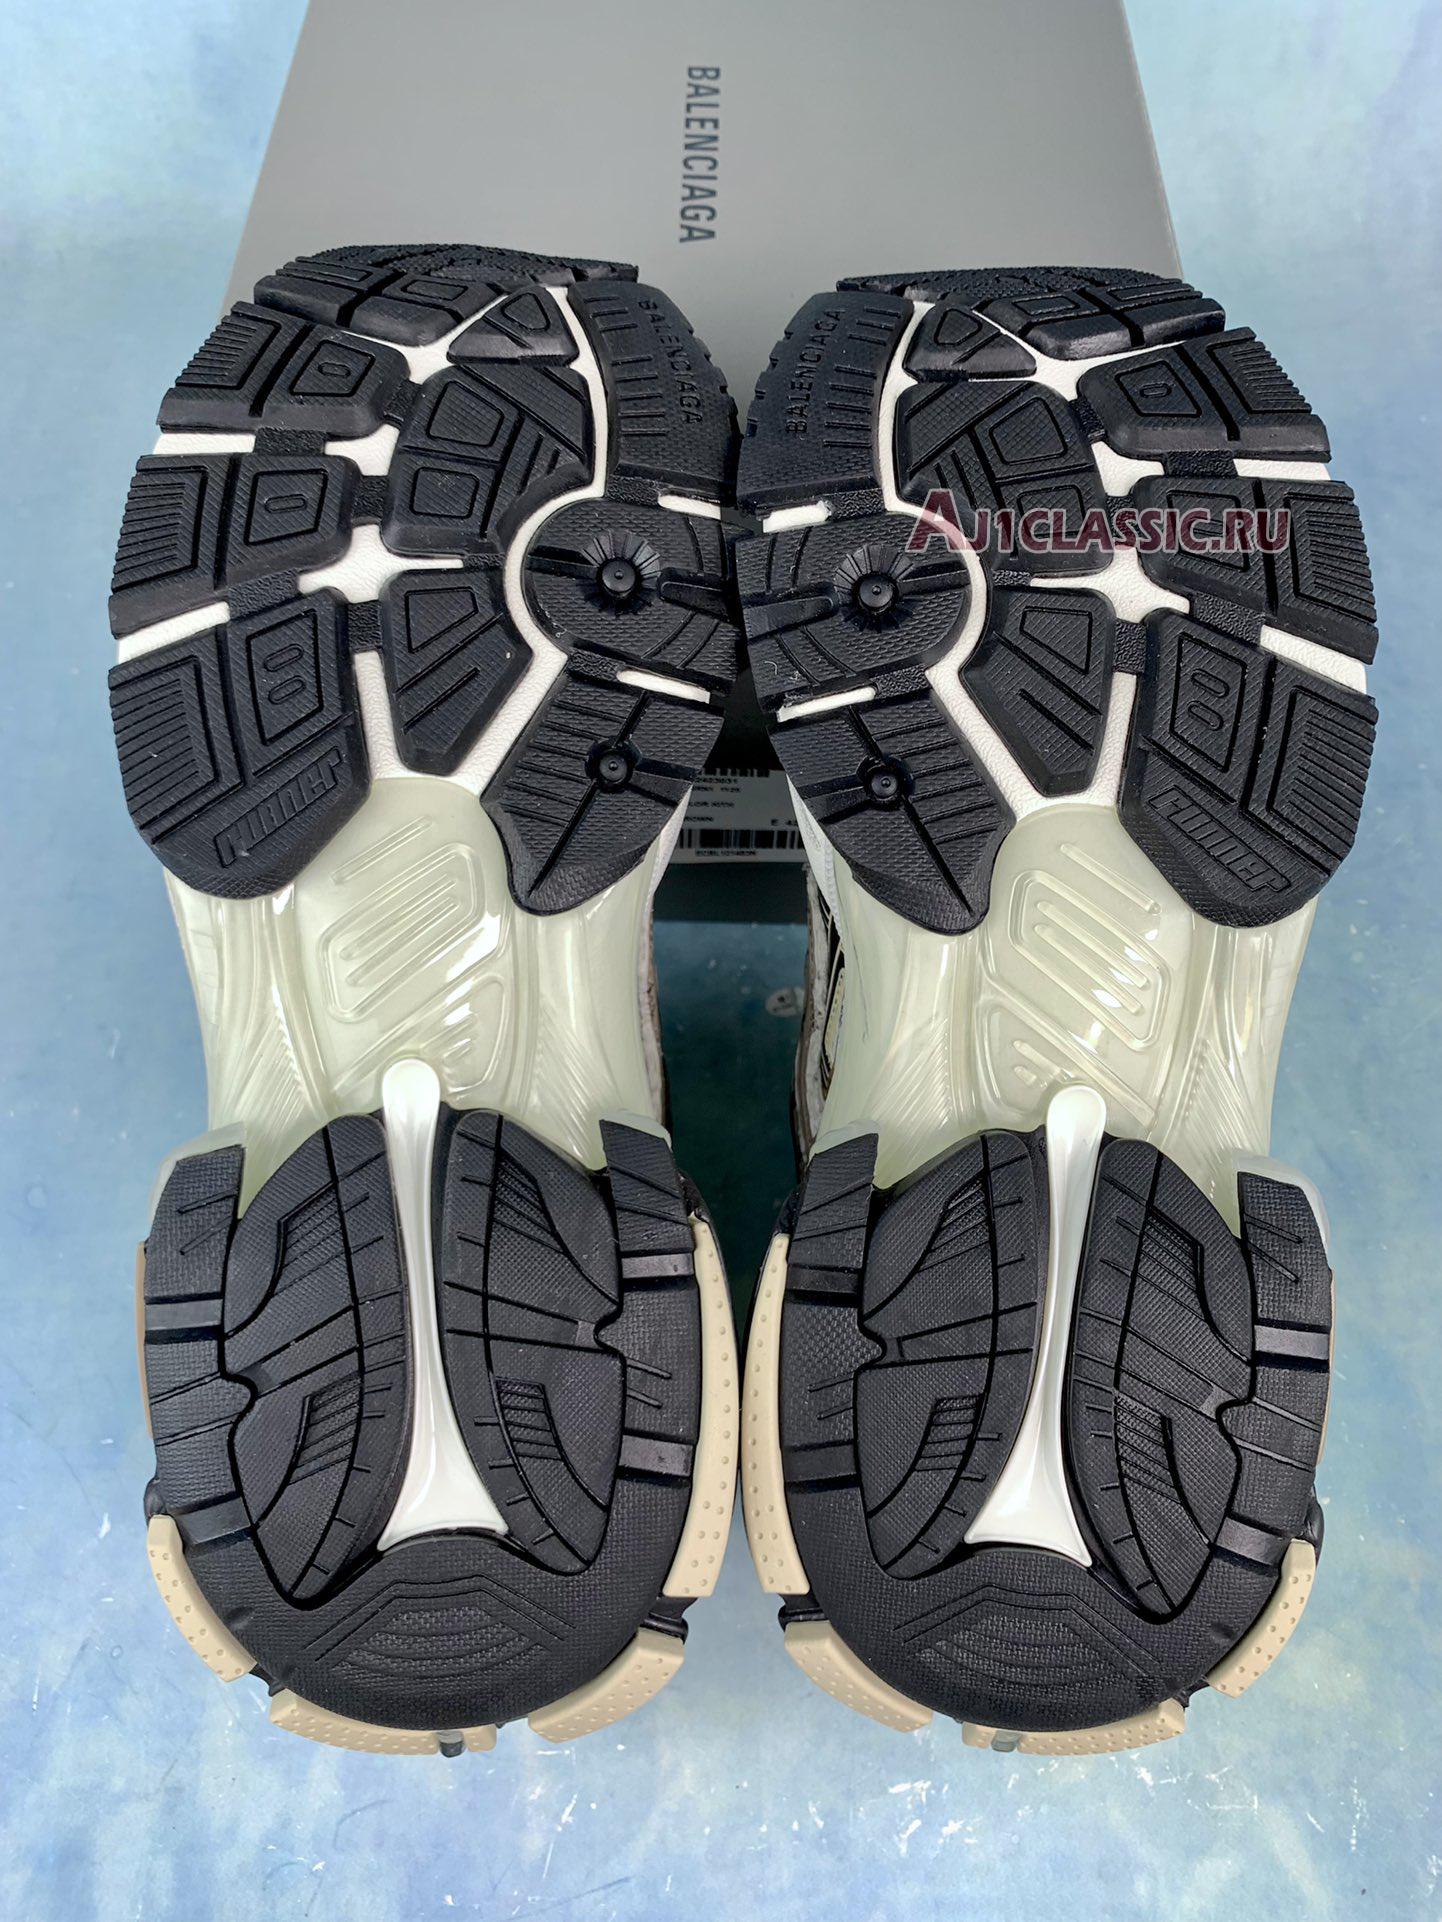 Balenciaga Runner Sneaker "Beige Black White" 677403 W3RB3 9891